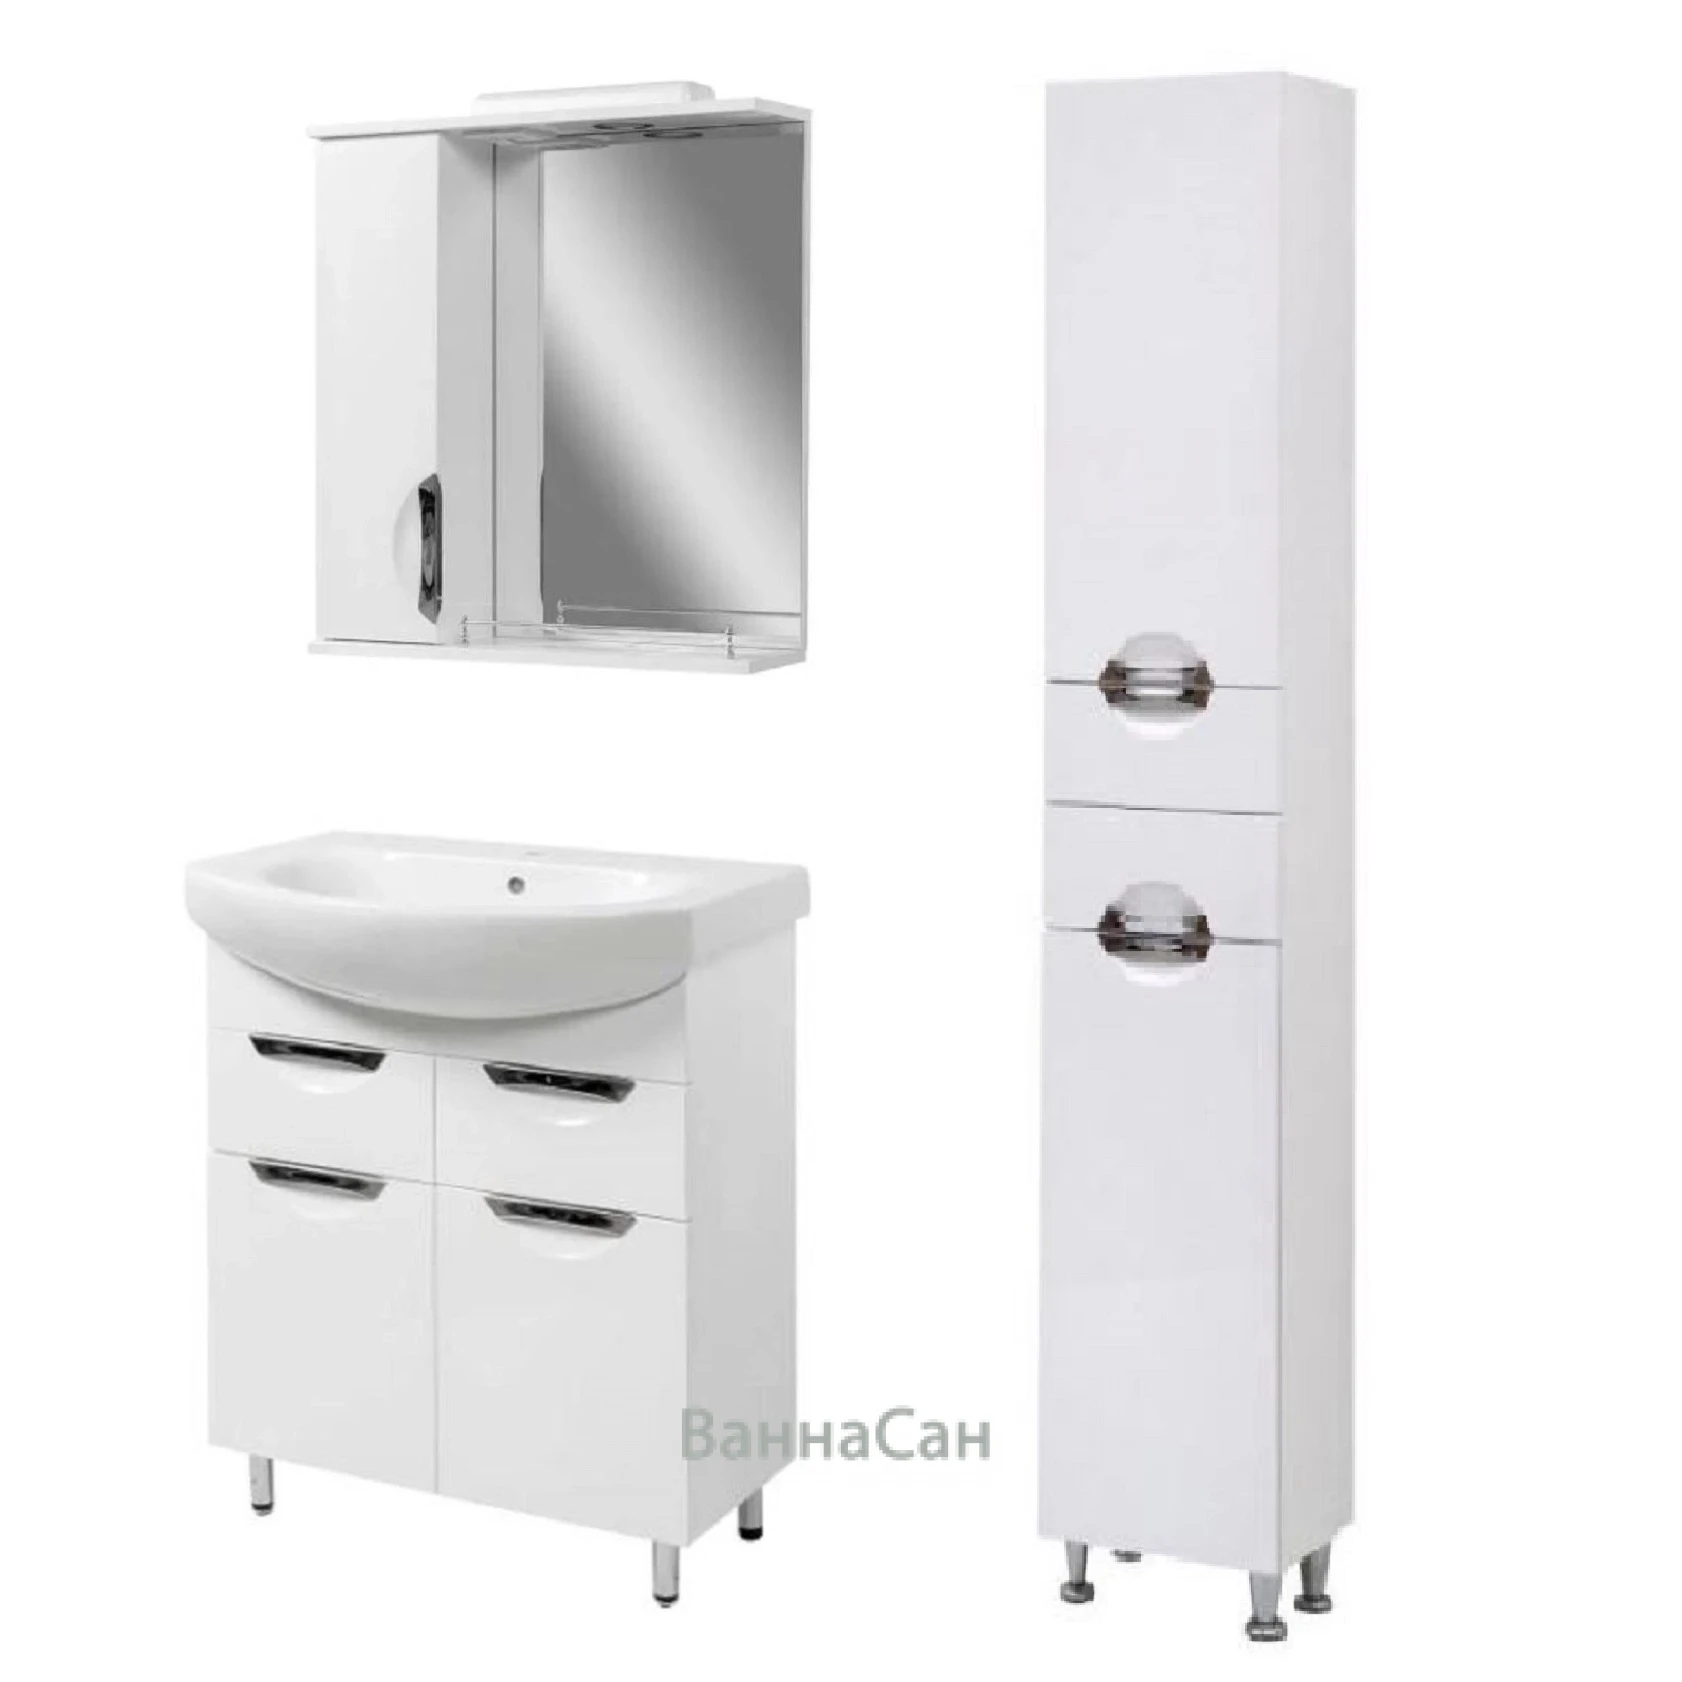 Основное комплект мебели для ванной комнаты с корзиной для белья 70 см шириной санвестгруп грация 46626-36653-36701 №1